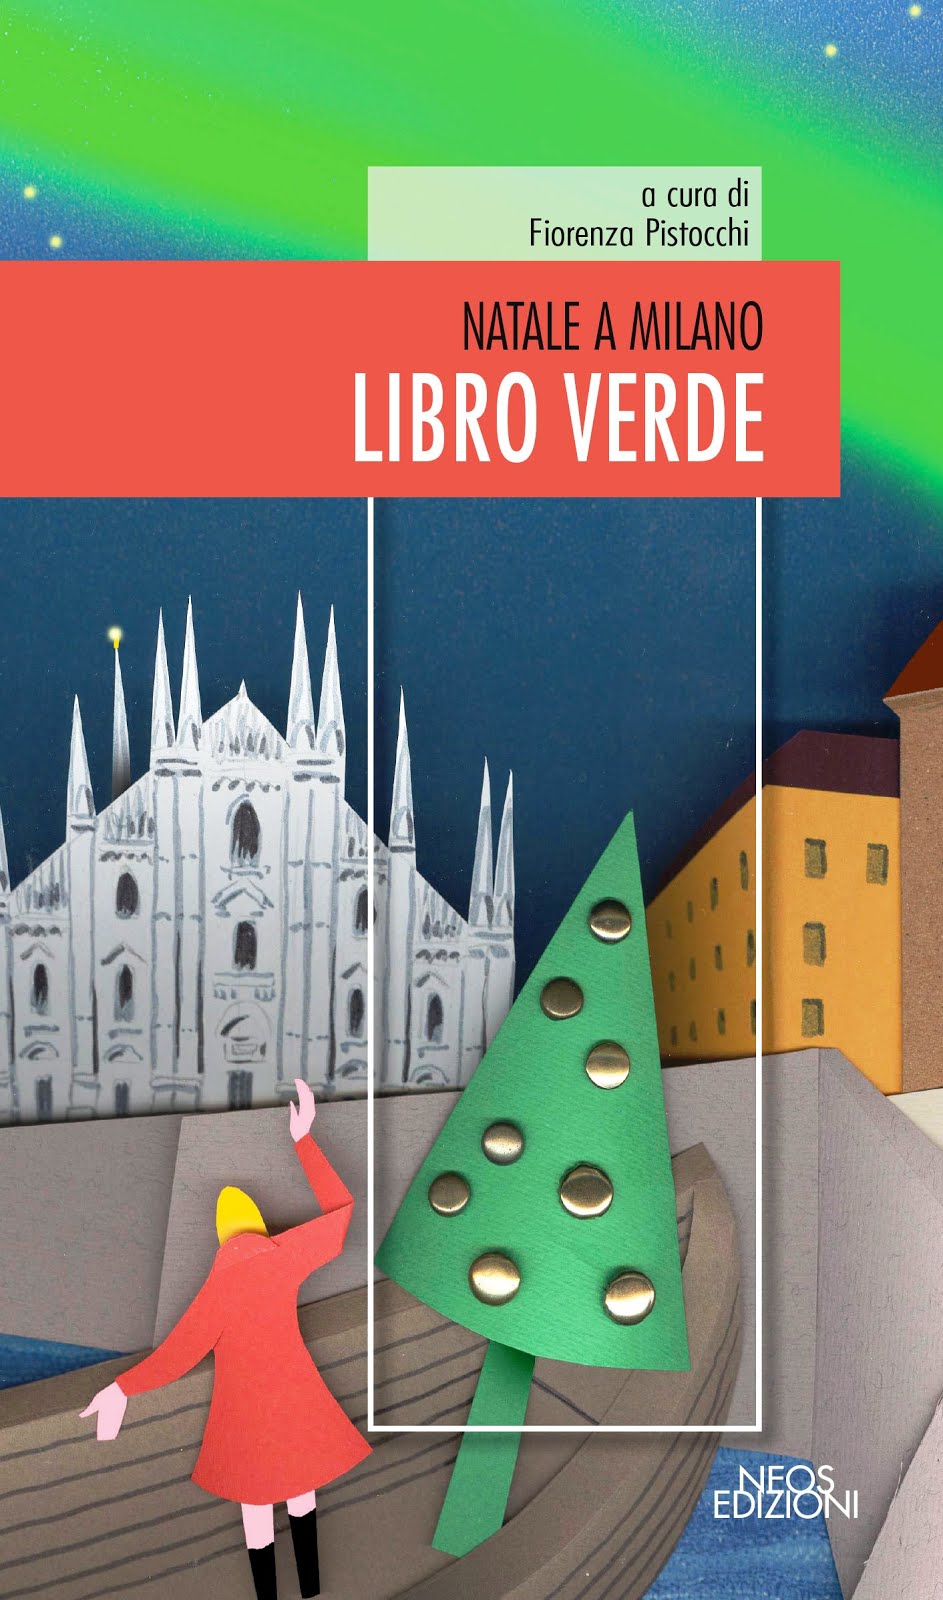 "Natale a Milano - Libro Verde" 2020 Neos Edizioni